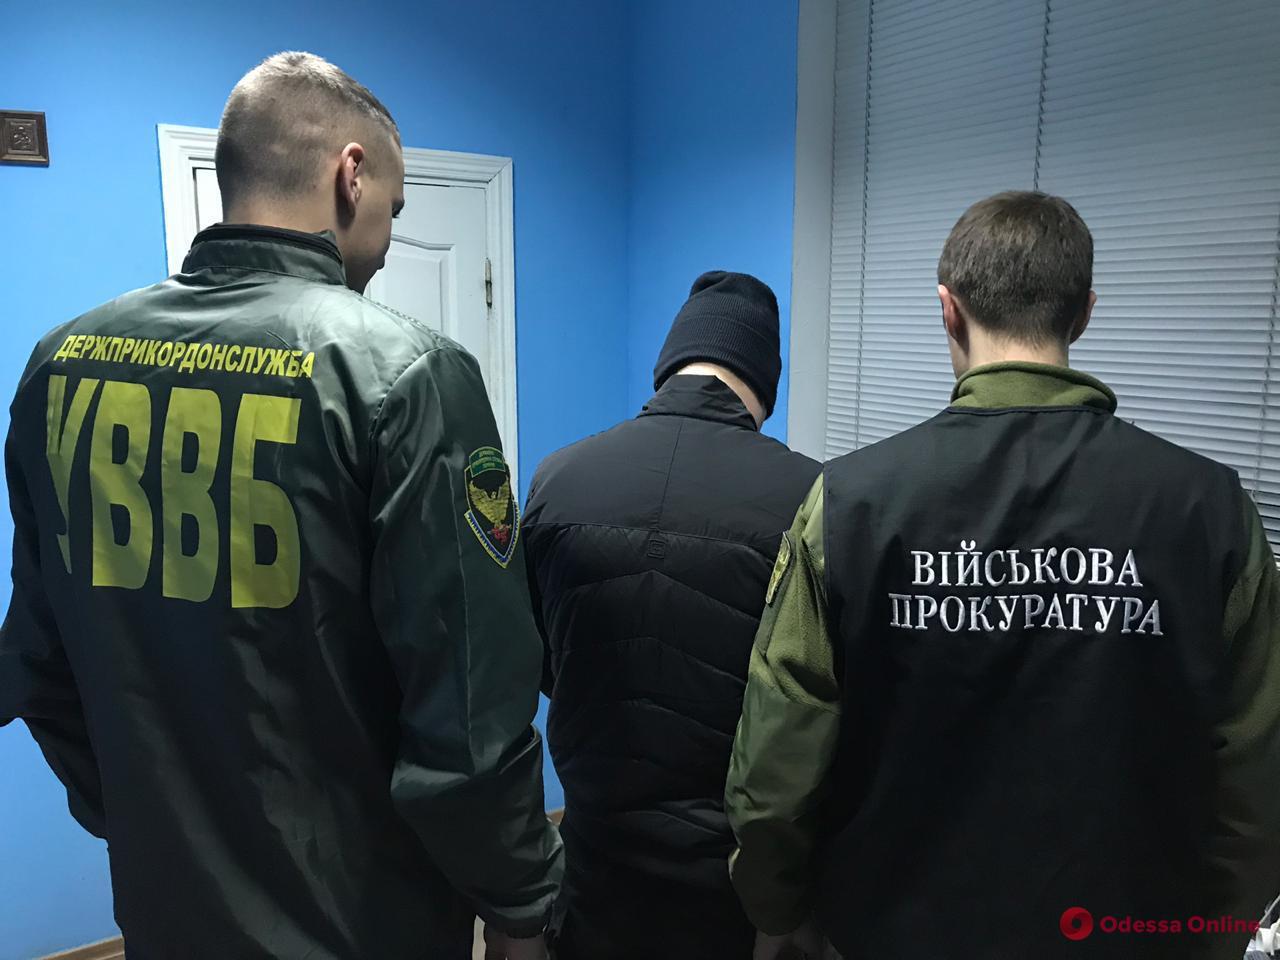 В Одесской области мужчина с двойным гражданством предлагал взятку пограничникам